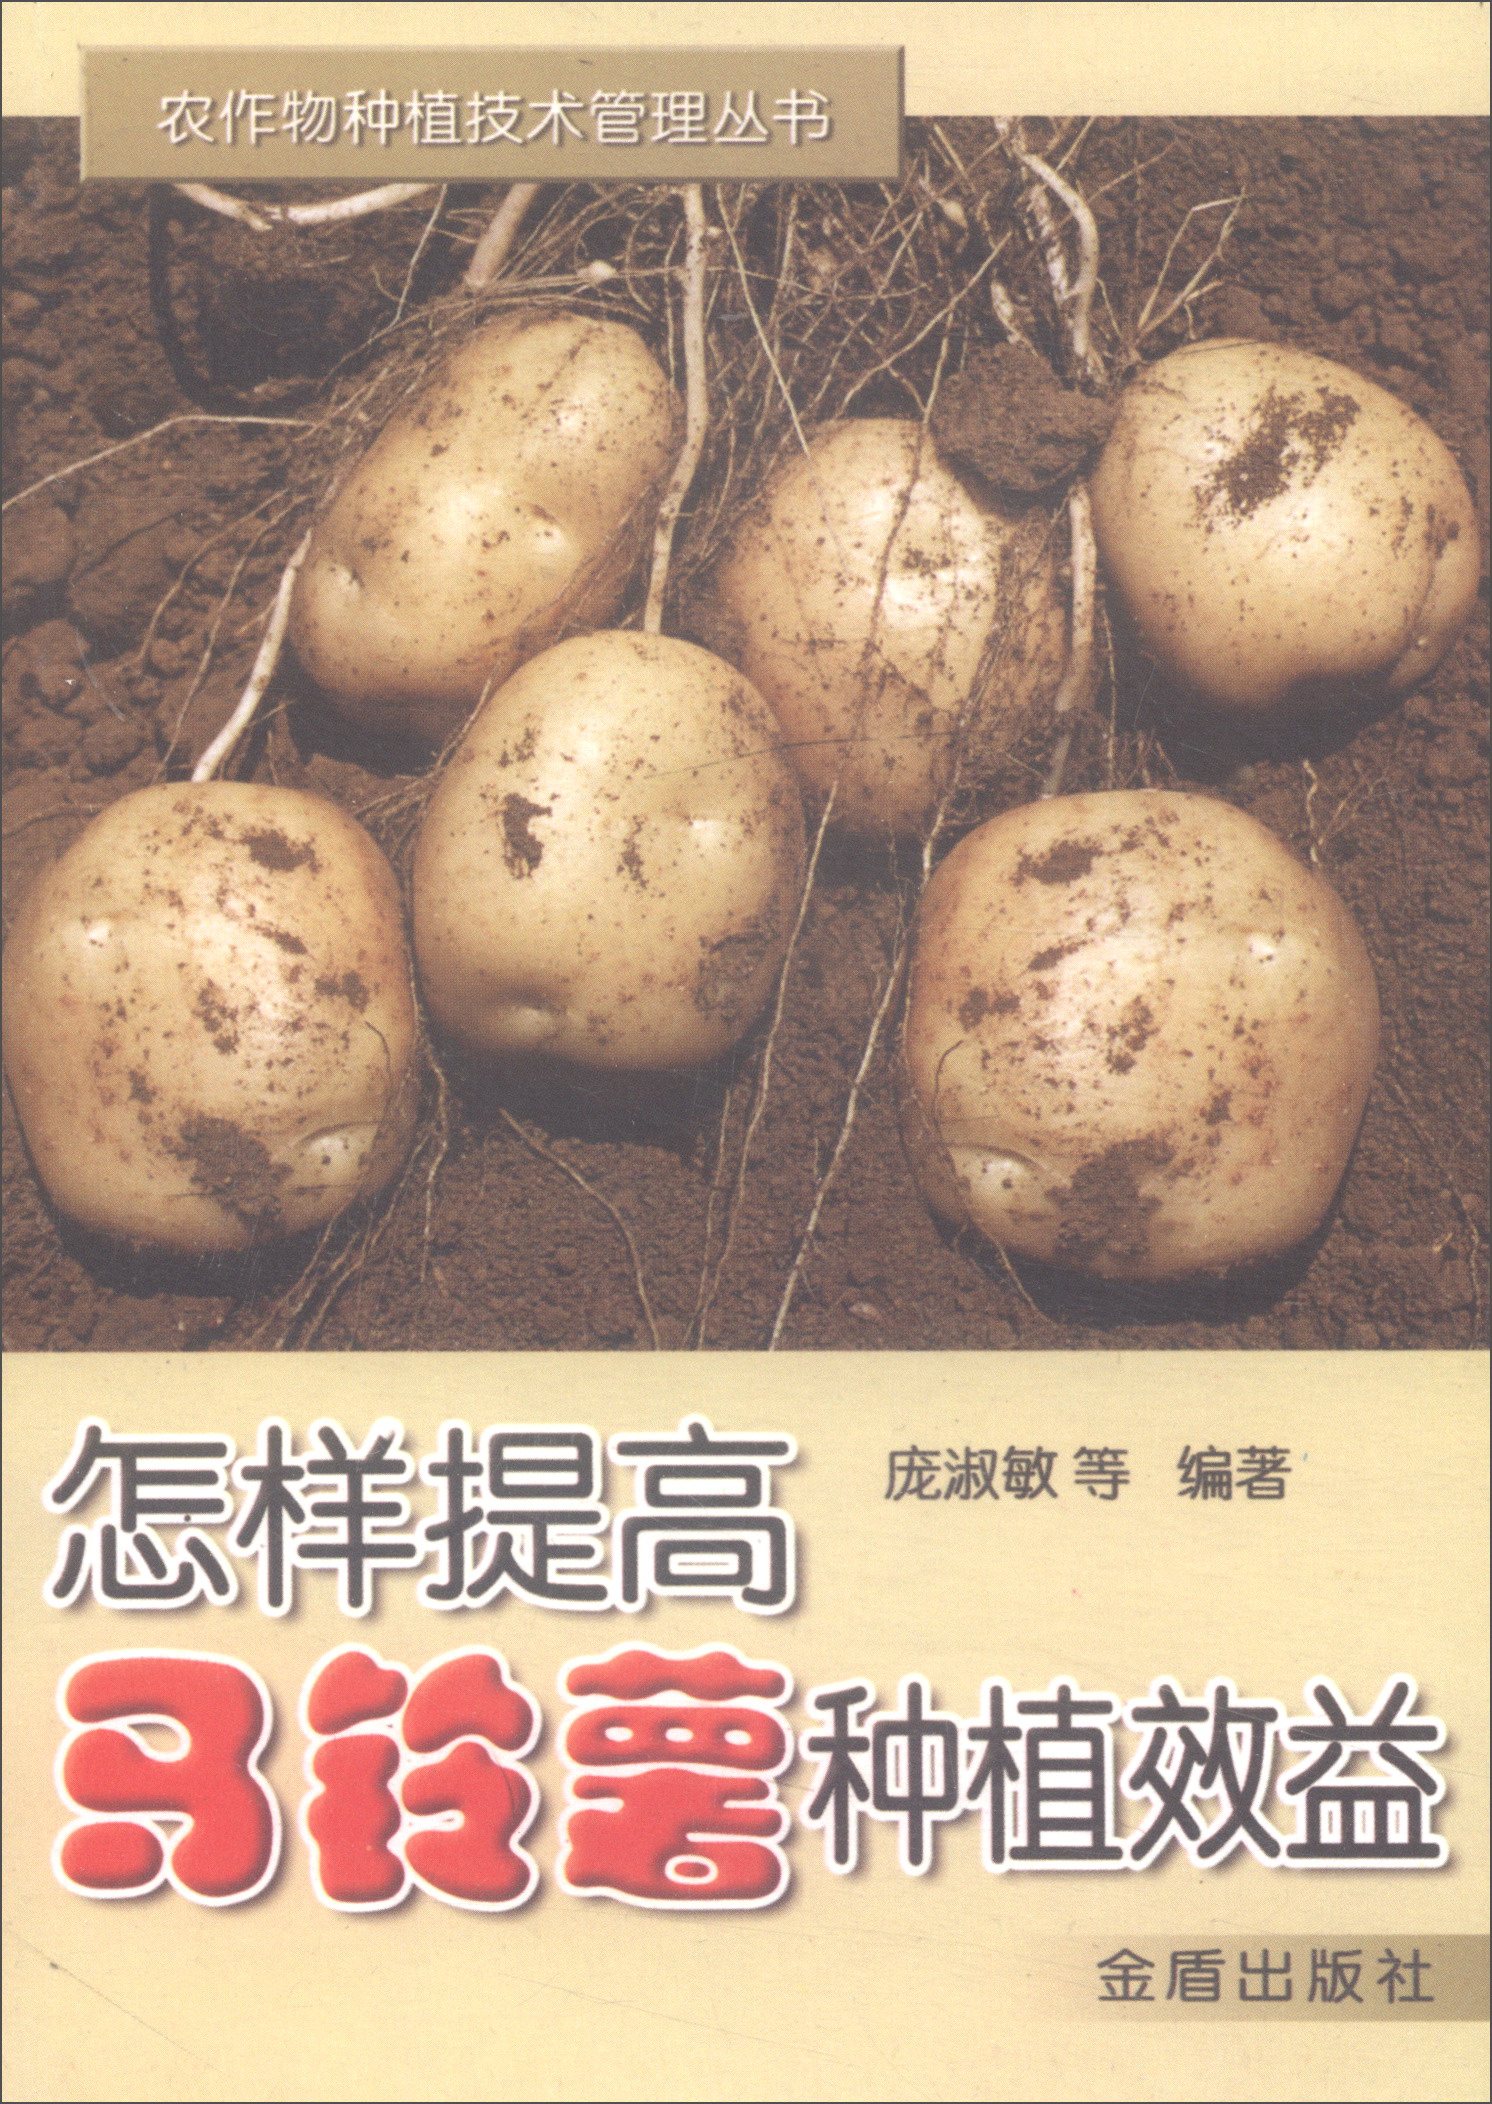 怎样提高马铃薯种植效益/农作物种植技术管理丛书 word格式下载